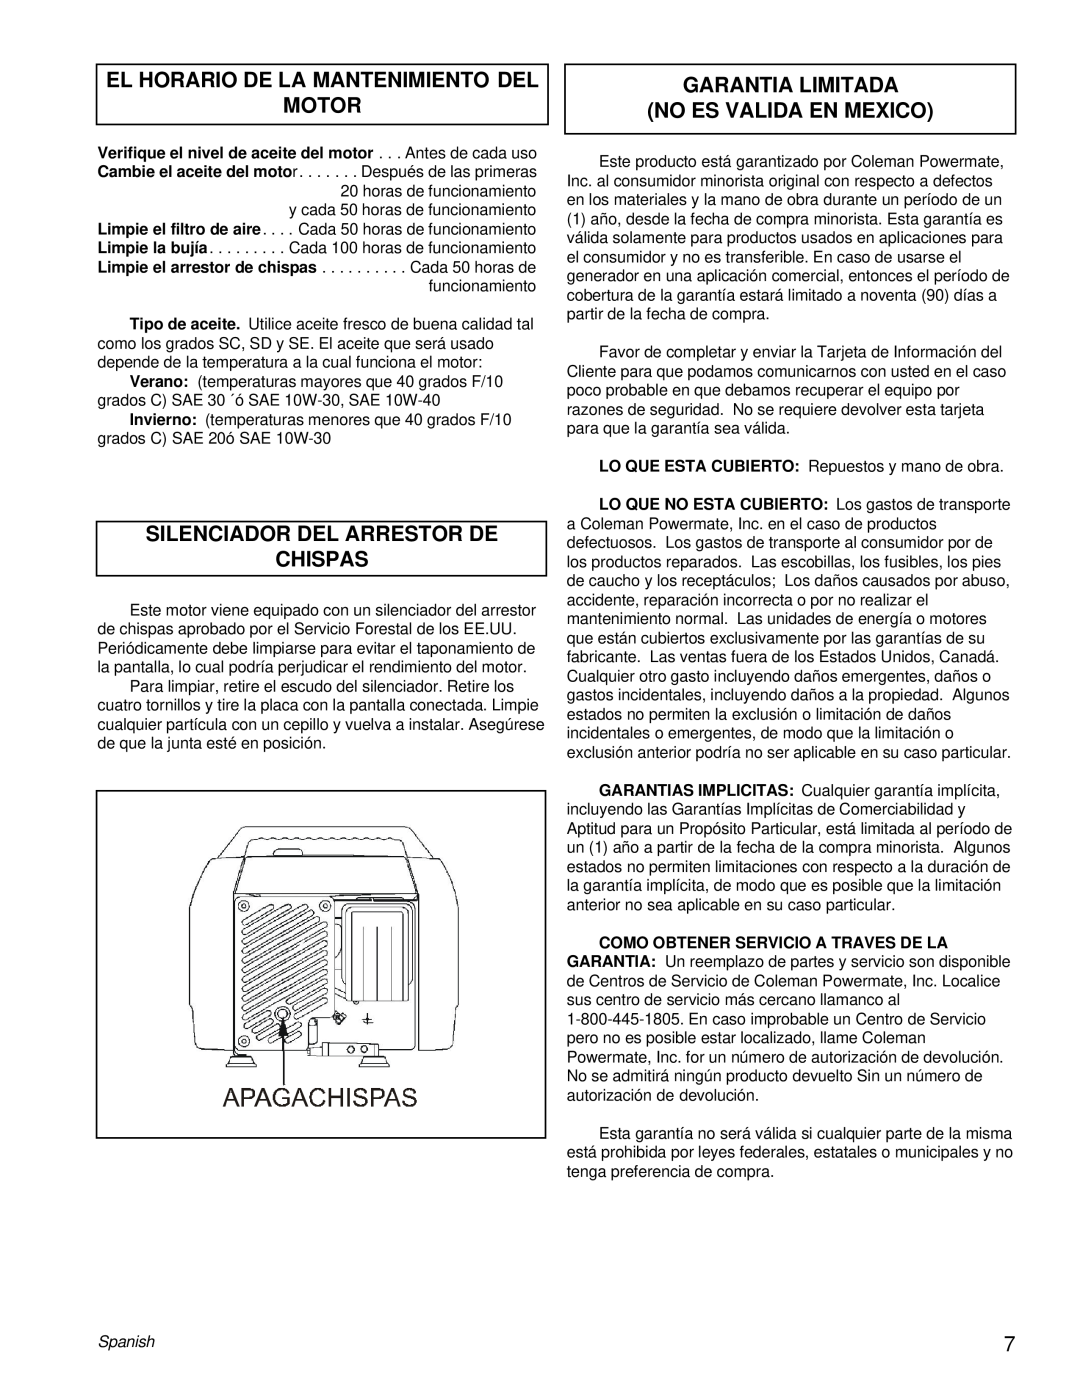 Powermate PE0402042.01 manual El Horario De La Mantenimiento Del Motor, Silenciador Del Arrestor De Chispas, Spanish 